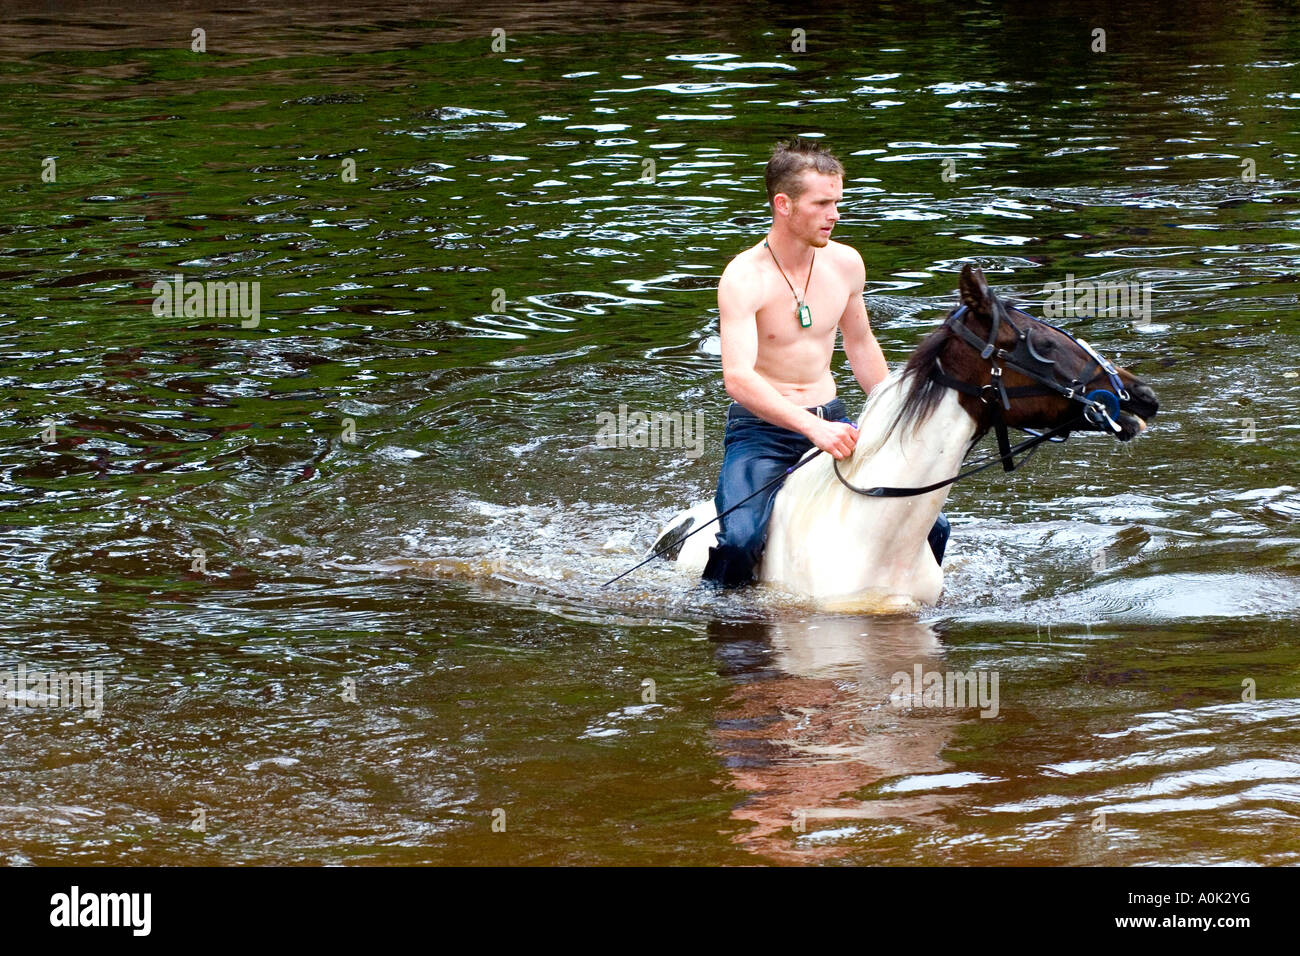 A man rides a horse through a river Stock Photo - Alamy